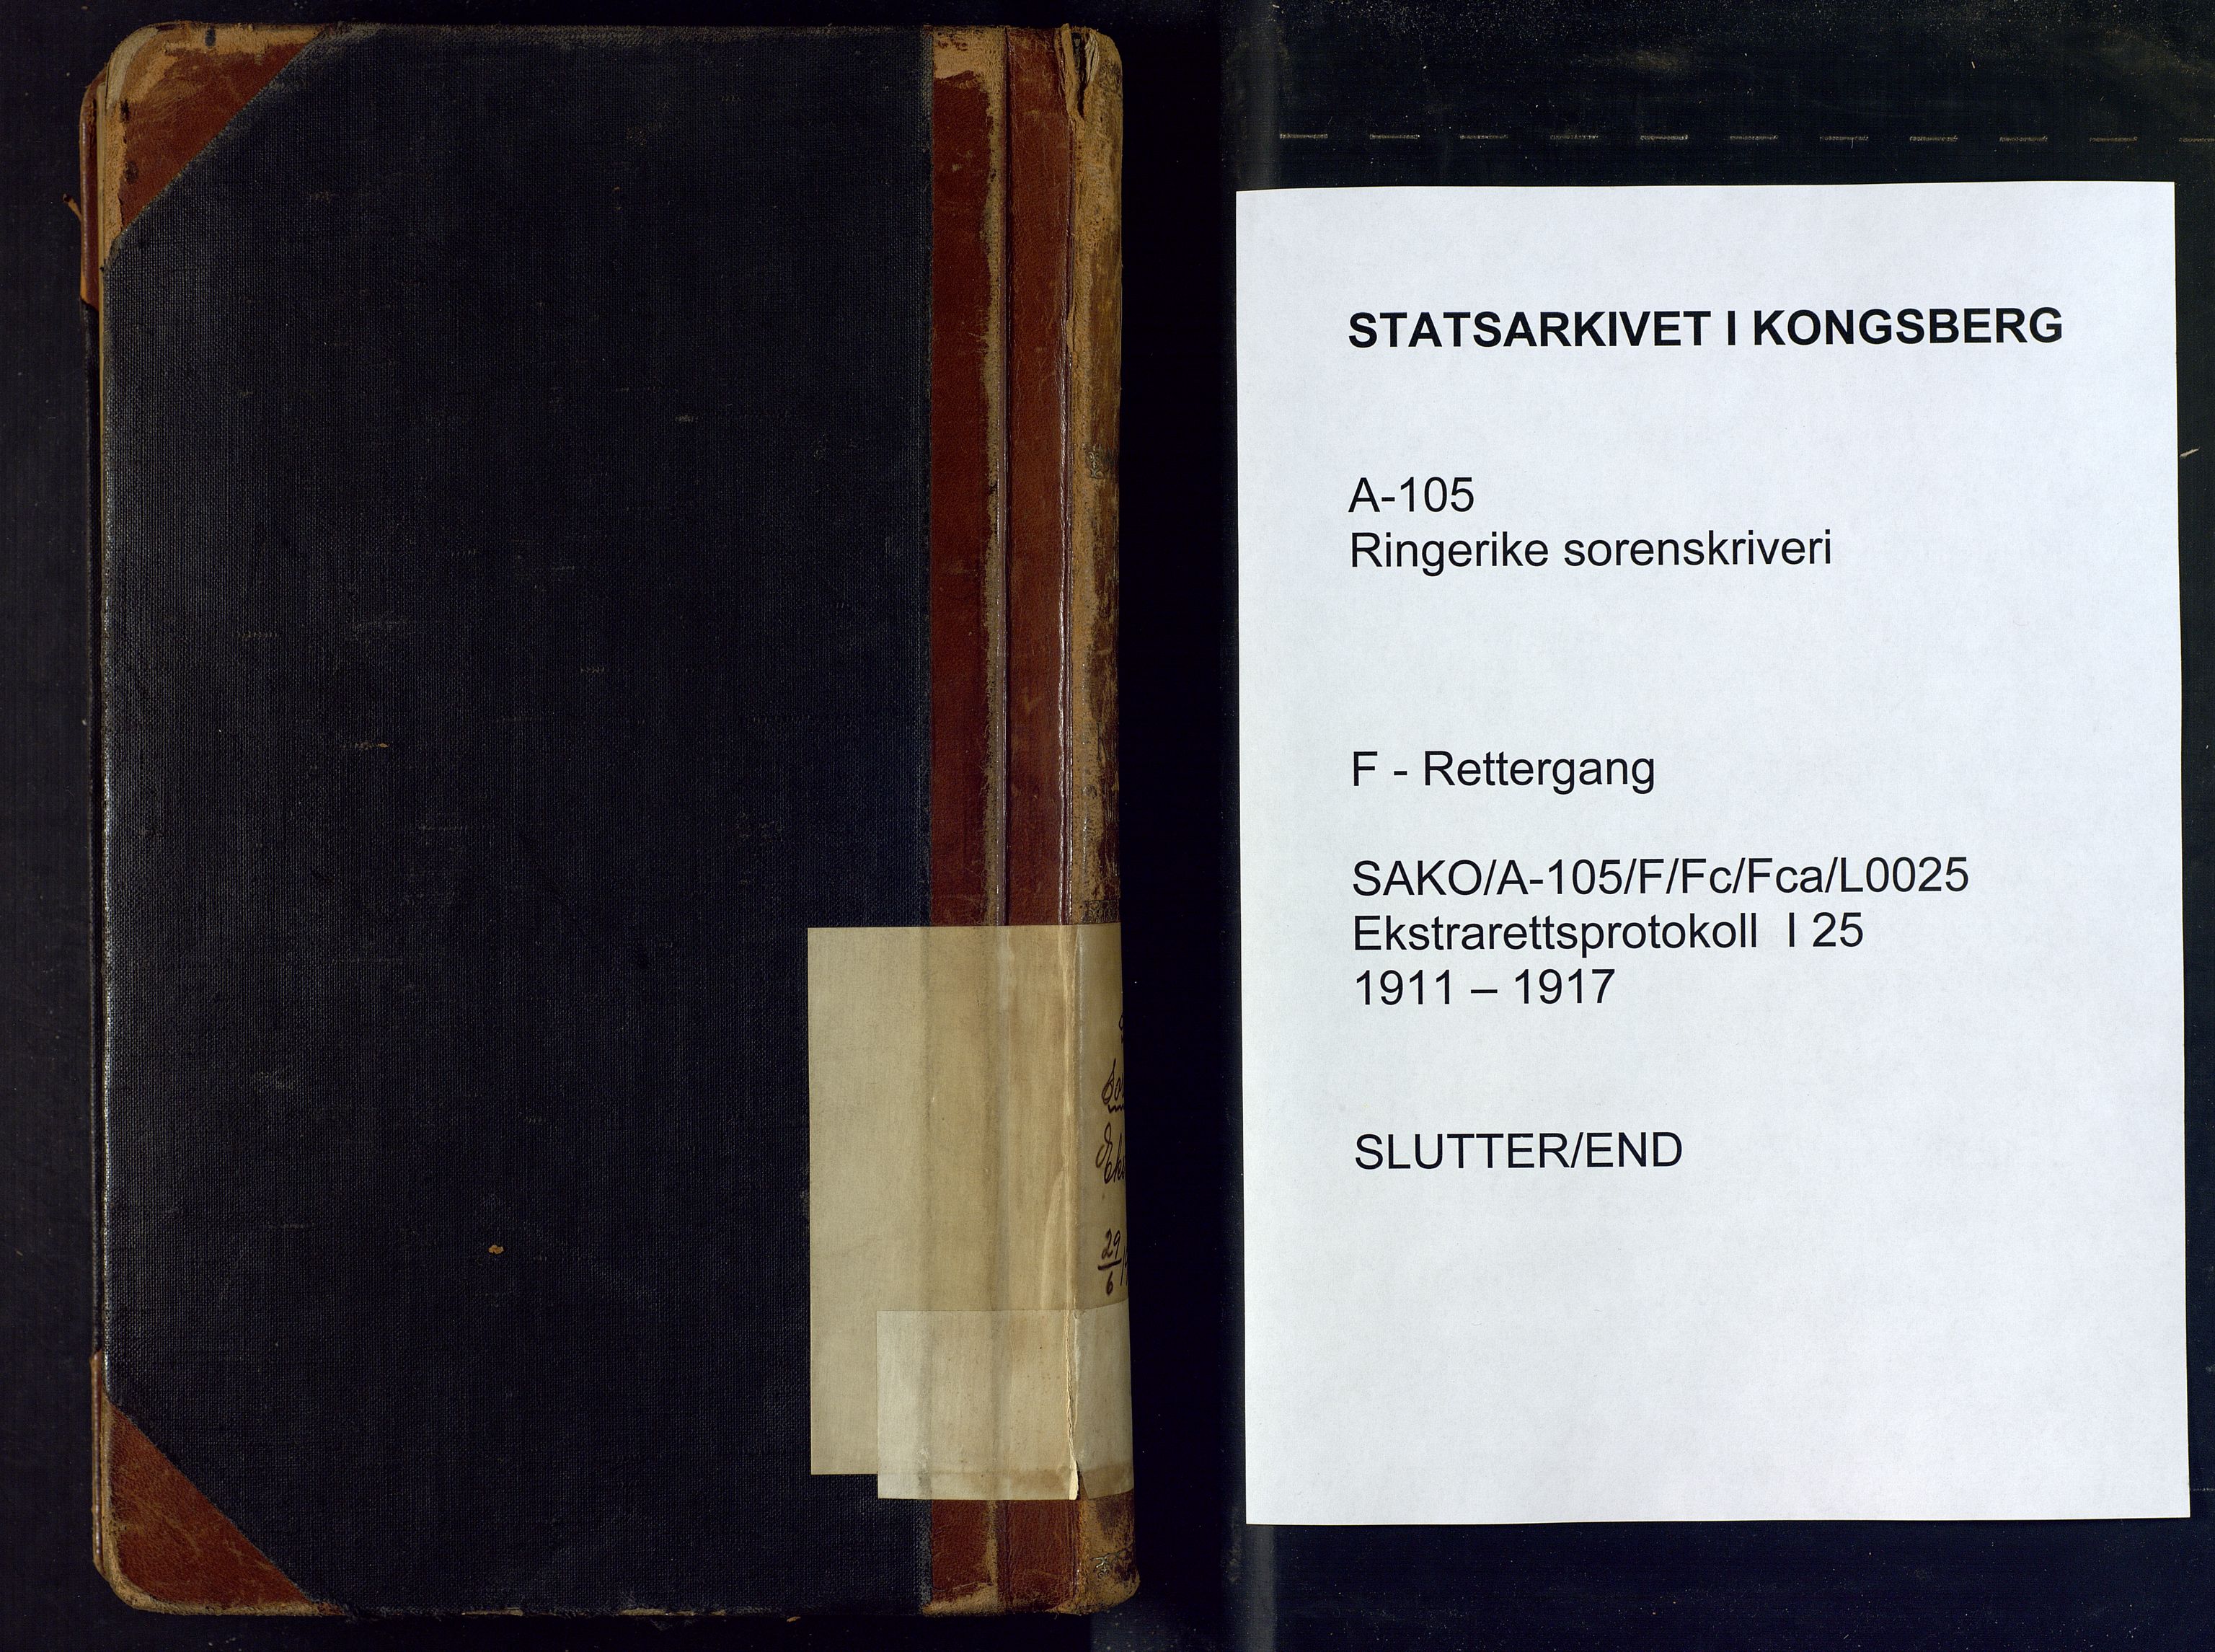 Ringerike sorenskriveri, SAKO/A-105/F/Fc/Fca/L0025: Ekstrarettsprotokoll, 1911-1917